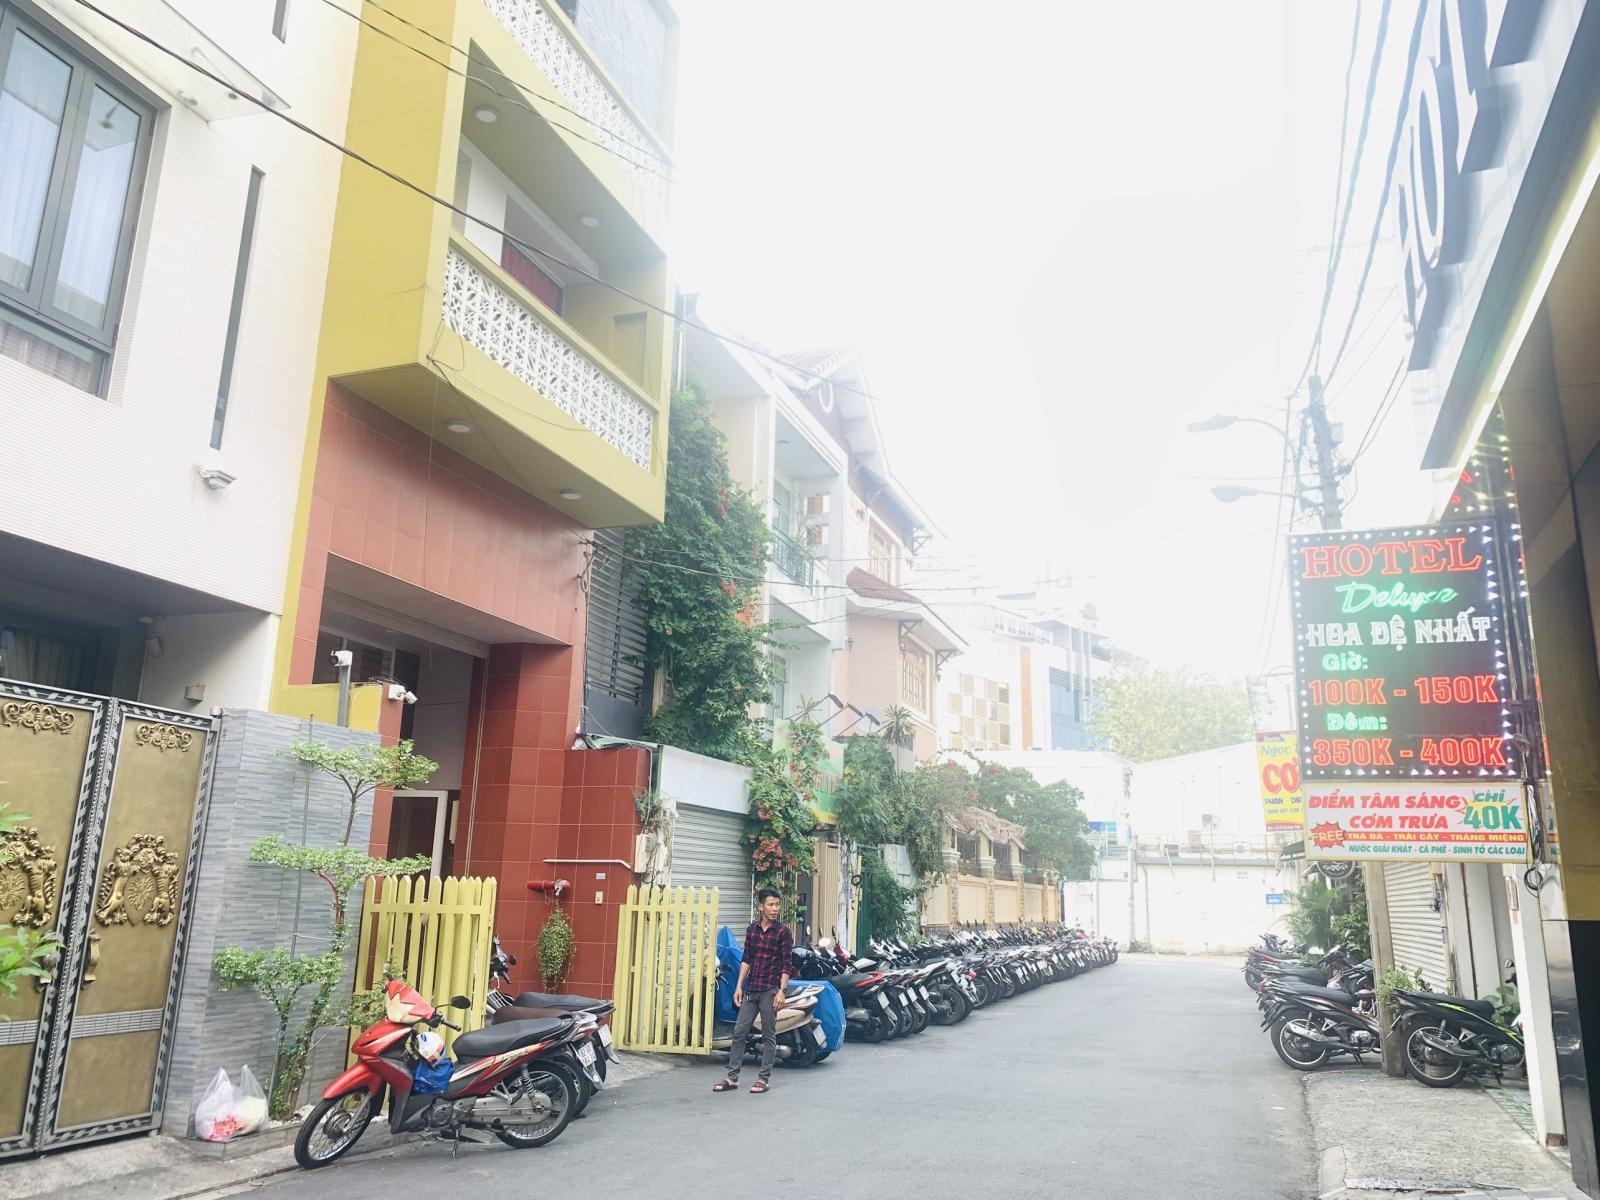 Bán villa phố khu Đệ nhất Khách Sạn, Phường 4, Quận Tân Bình - giá siêu rẻ 